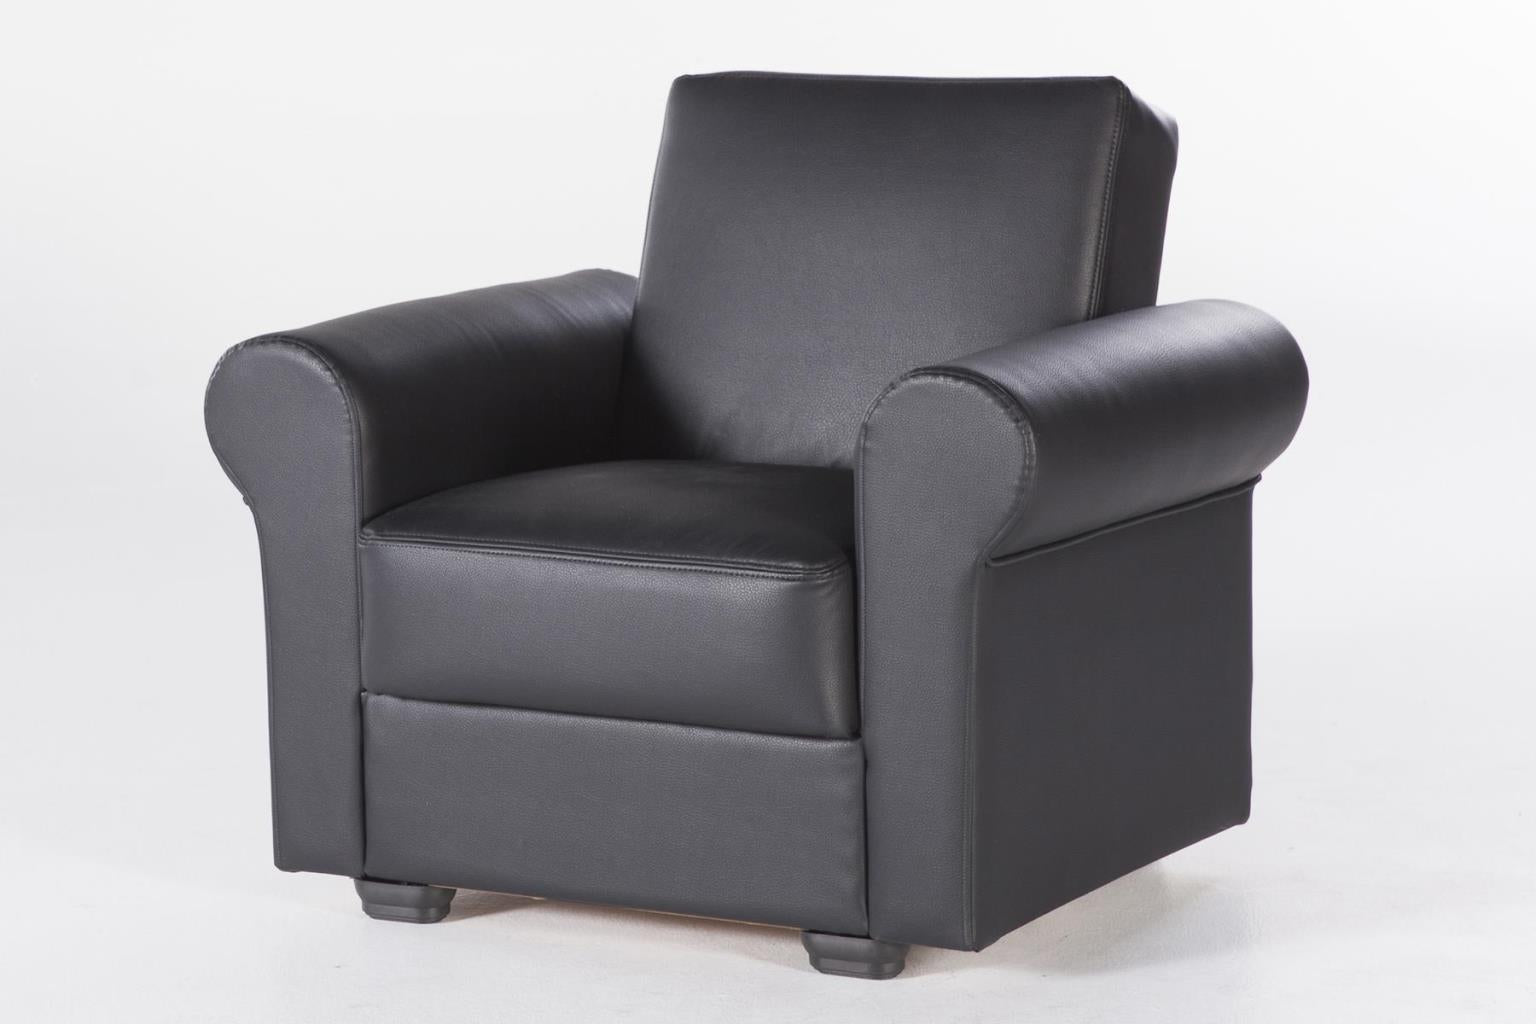 Floris Set (Sofa & Chair)